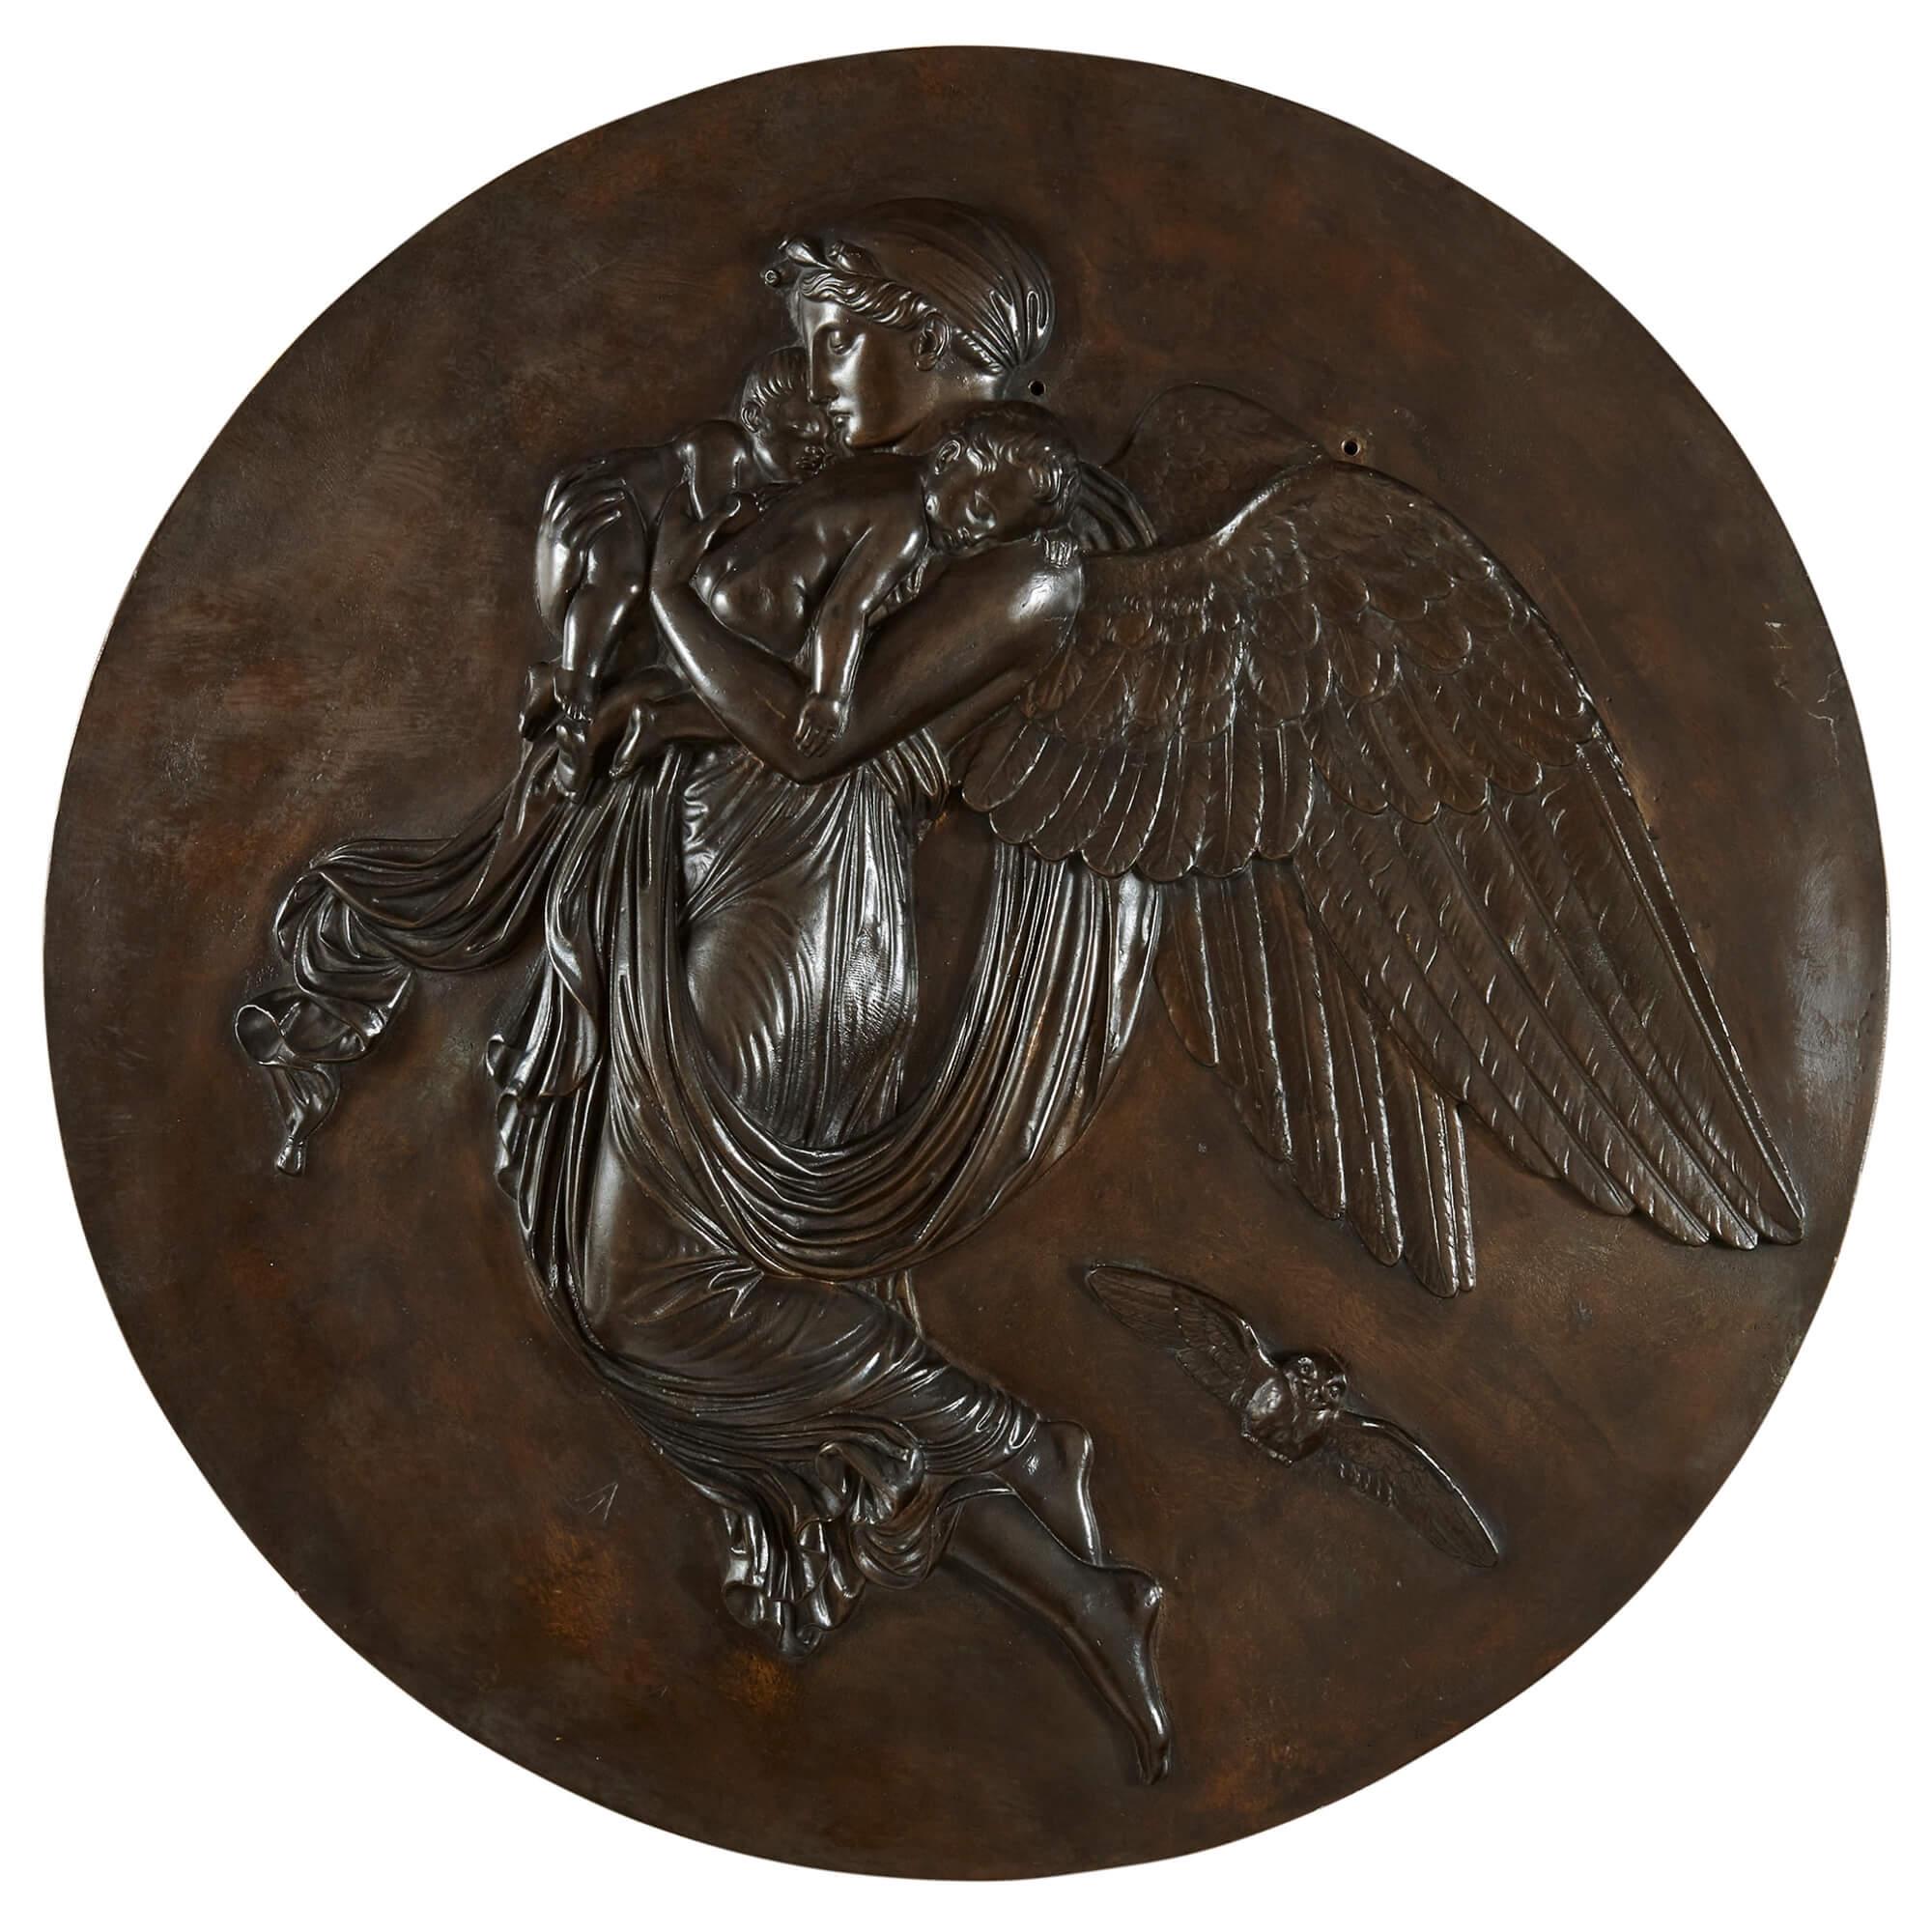 Ein Paar antike Plaketten aus patinierter Bronze mit Nacht und Tag
Französisch, Ende 19. Jahrhundert
80 cm Durchmesser, 5 cm Tiefe

Nach dem Vorbild von Bertel Thorvaldsens ikonischen 